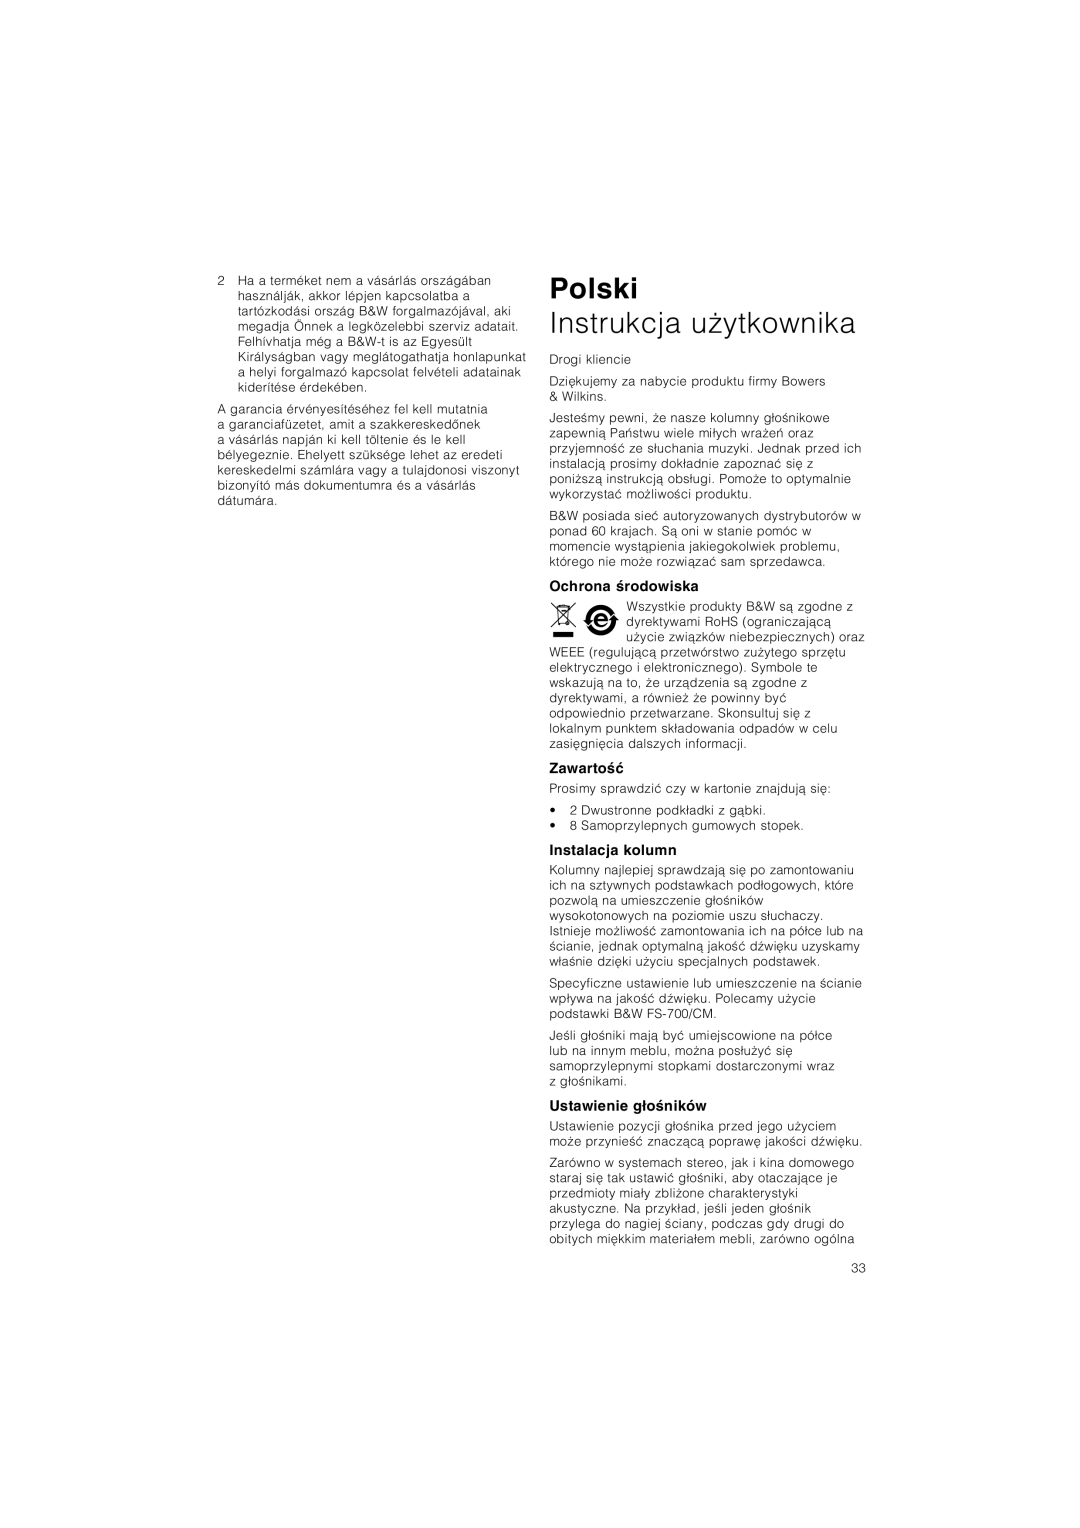 Bowers & Wilkins CM5 owner manual Polski, Instrukcja uÃytkownika, Ochrona ·rodowiska, Zawarto·π, Instalacja kolumn 